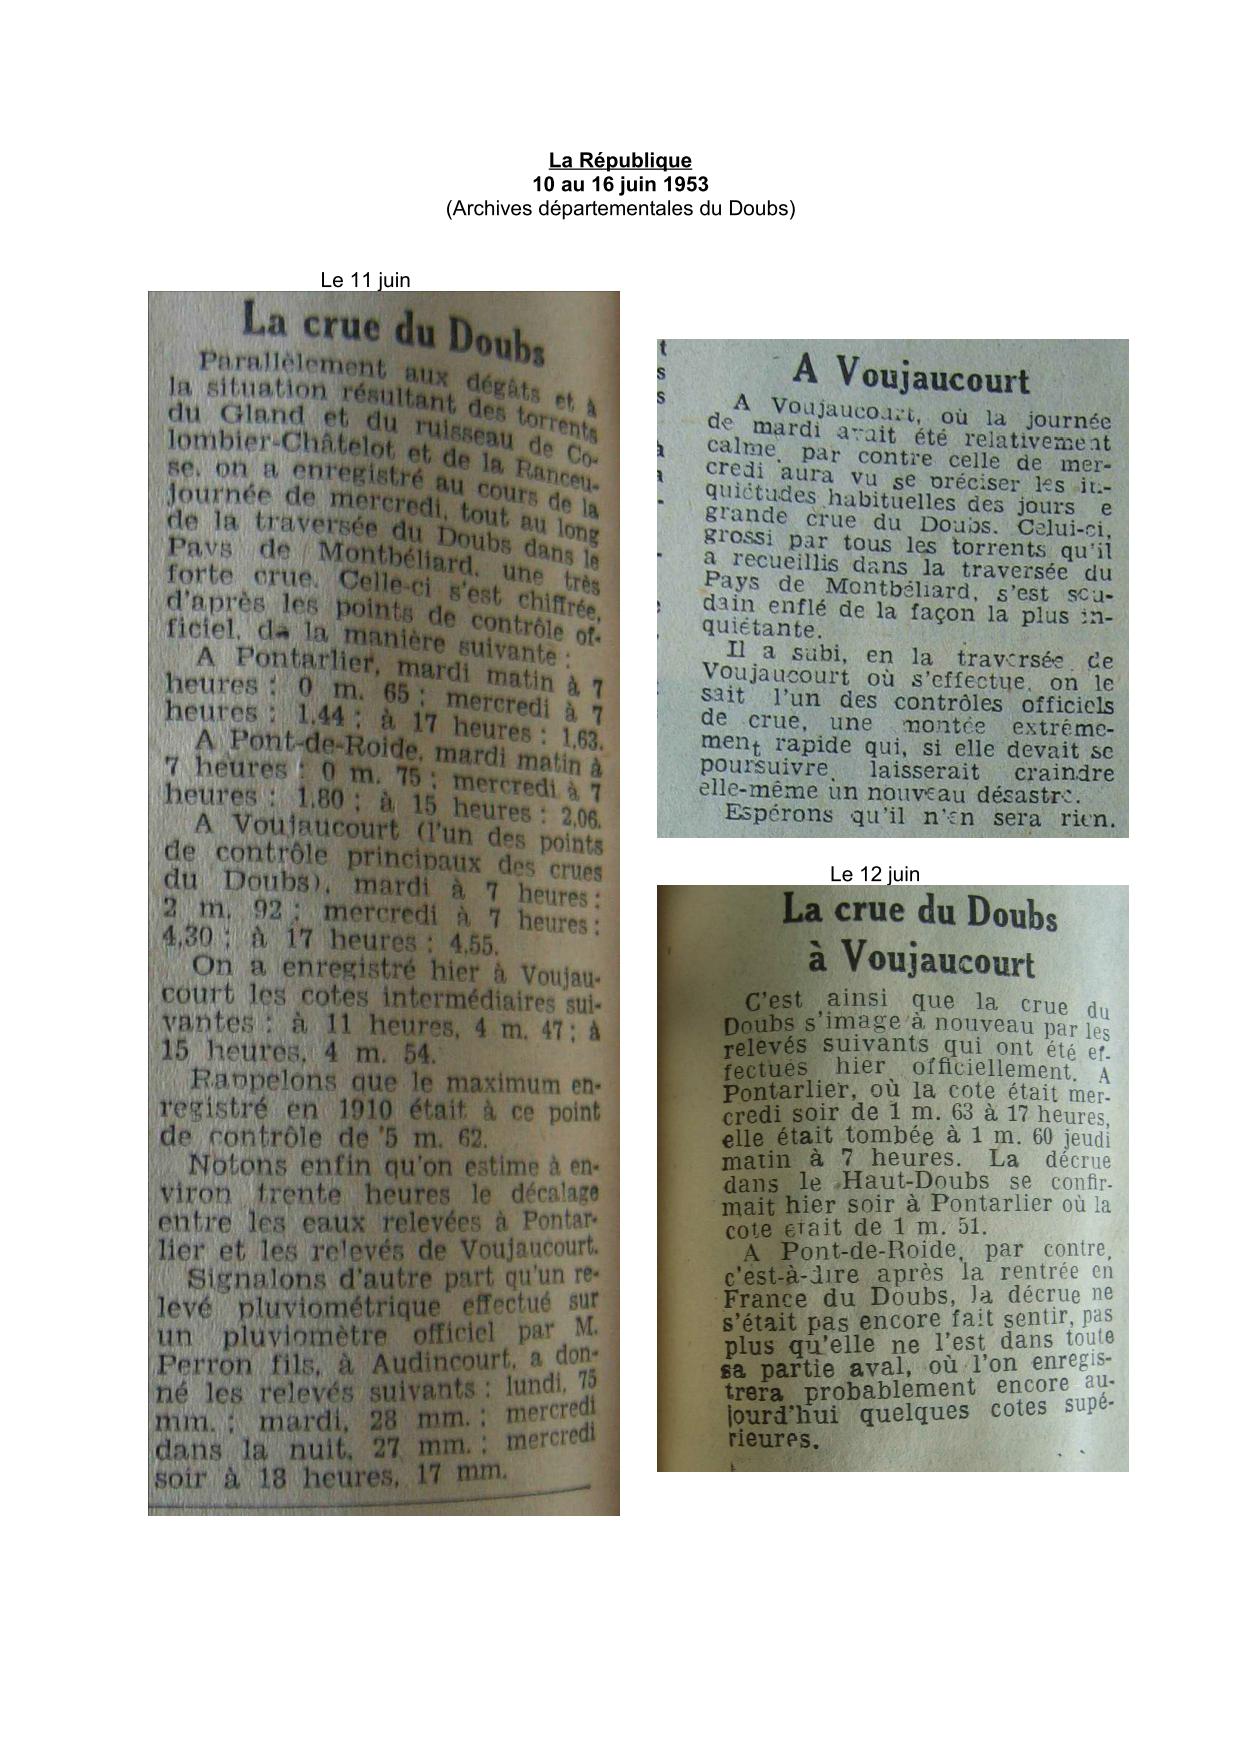 Journal - La République - 1953 - Cotes relevées sur Le Doubs